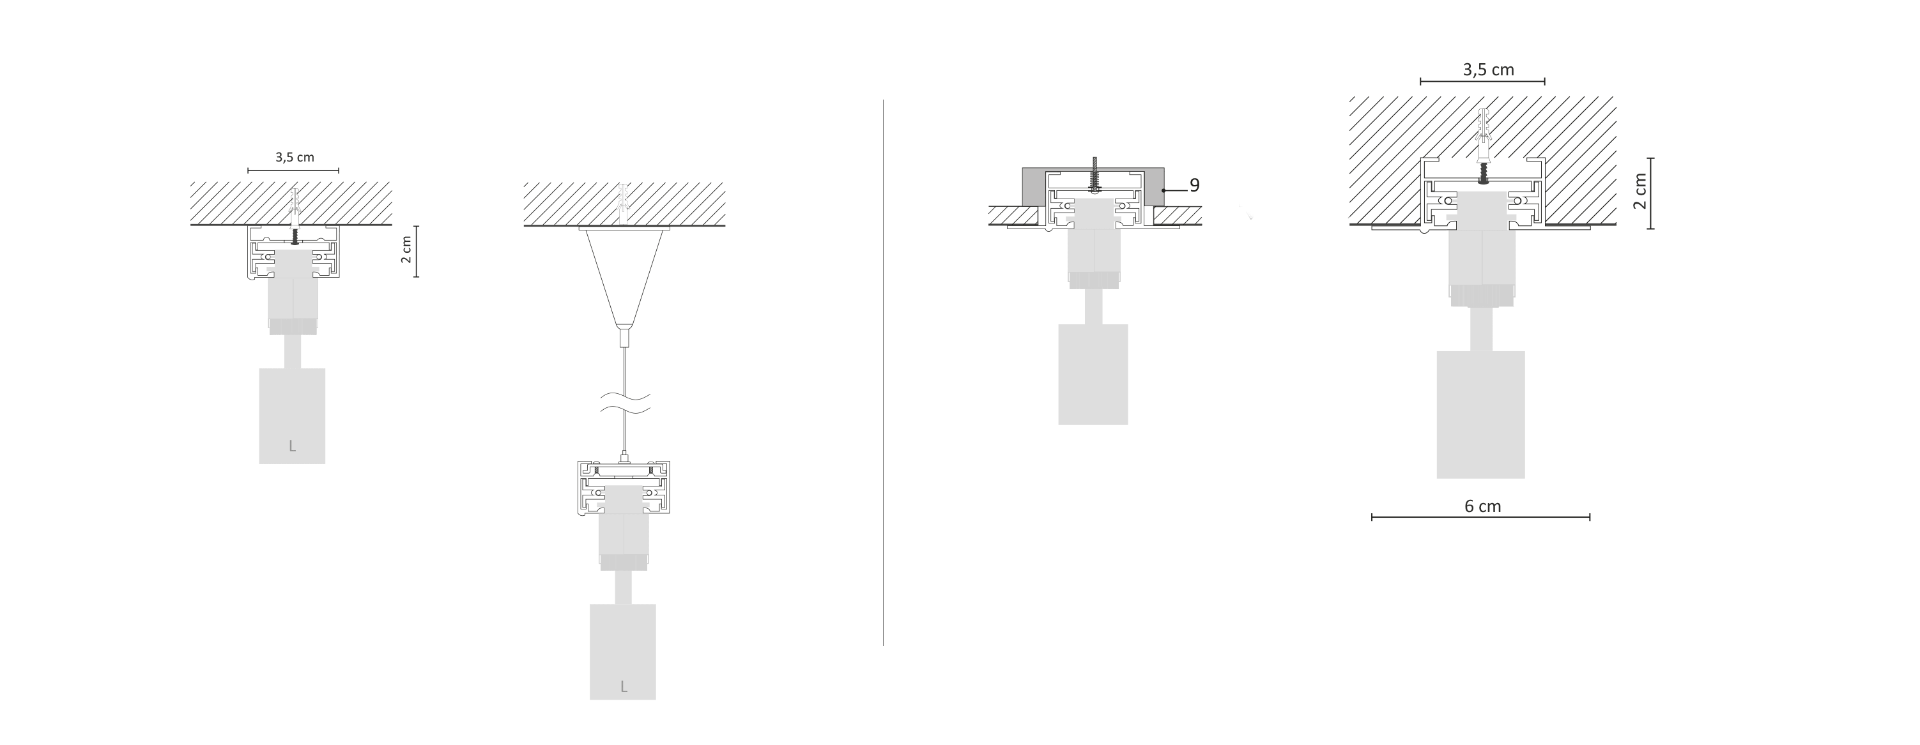 Schemat montażu układu torowego: za pomocą podwieszeń linowych (po lewej) i mocowania wpuszczanego (po prawej)